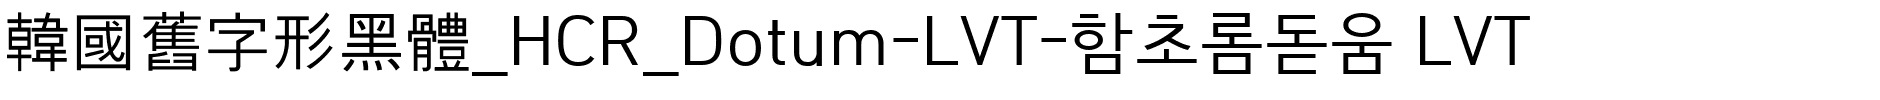 韓國舊字形黑體_HCR_Dotum-LVT-함초롬돋움 LVT